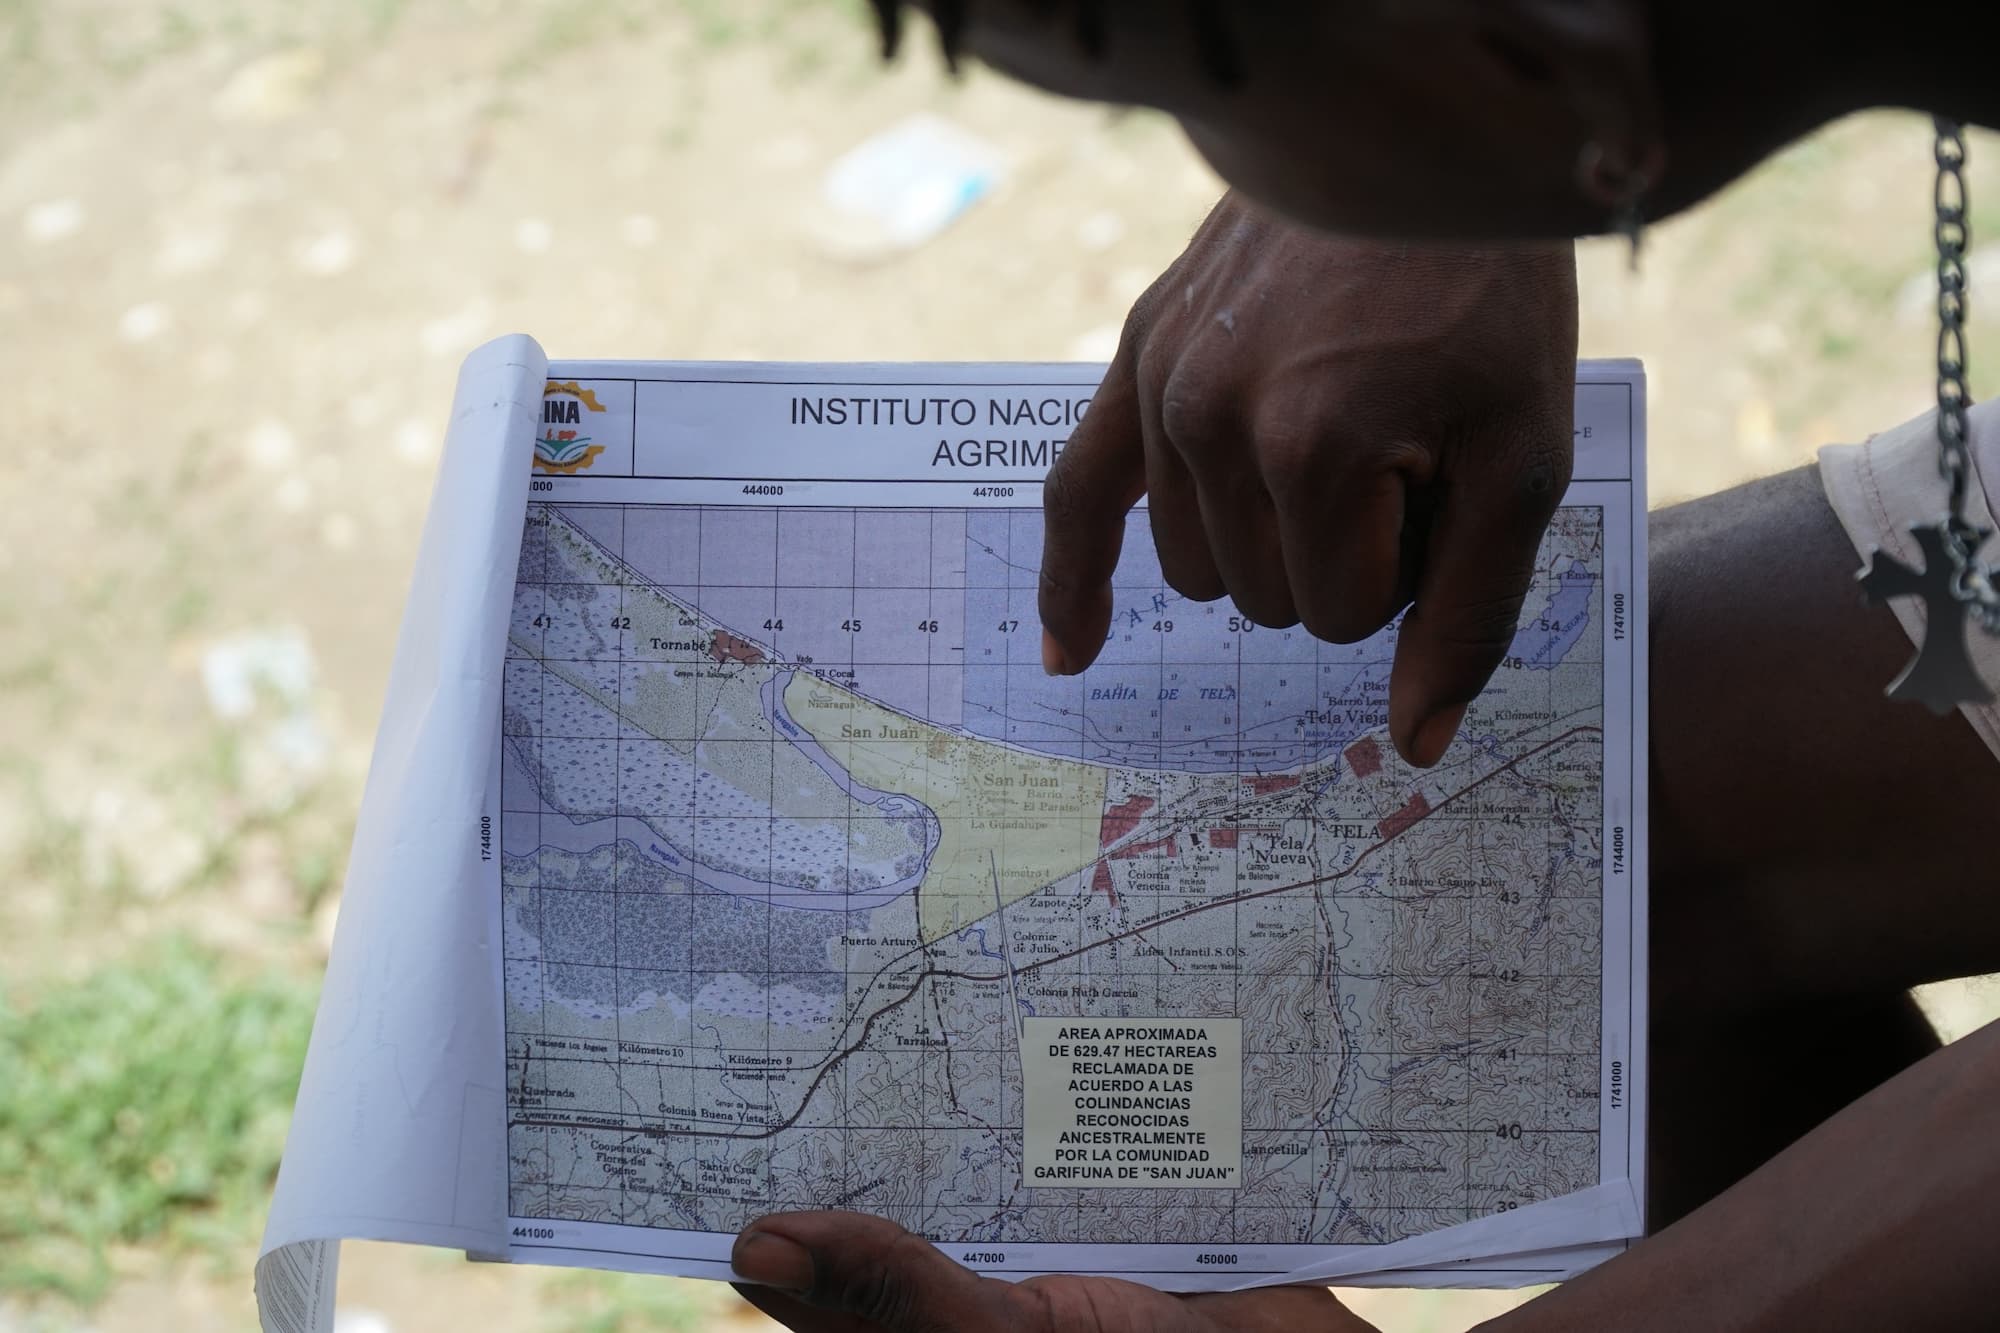 Deinor muestra en un mapa la porción de 629 hectáreas donde se delimita el territorio que ancestralmente le pertenece a la comunidad de San Juan, Tela. Foto CC/Amílcar Izaguirre